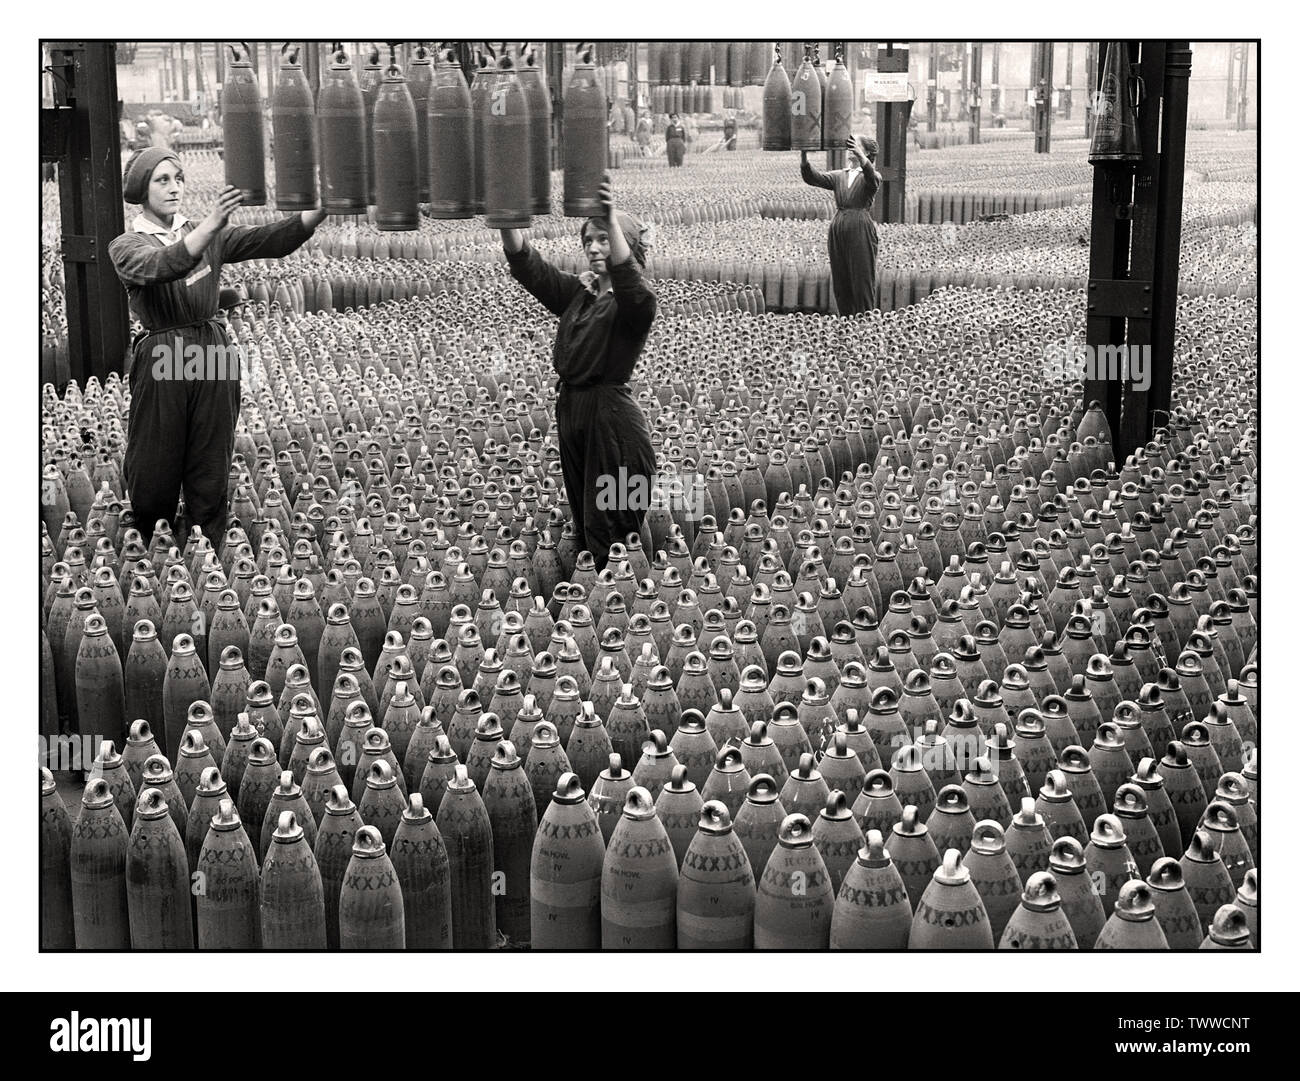 Vintage 1915 World War 1 Factory Shell Munitions donne donne lavoro di guerra produzione informazioni Propaganda immagine della grande fabbrica di riempimento di munizioni Chilwell, Gran Bretagna prima guerra mondiale più di 19 milioni di fanteria e proiettili navali furono riempiti di esplosivi qui da 10.000 lavoratori tra il 1915 e il 1918, durante la prima guerra mondiale. La fabbrica riempì il 50% di tutti i proiettili britannici durante la grande prima guerra mondiale. Foto Stock